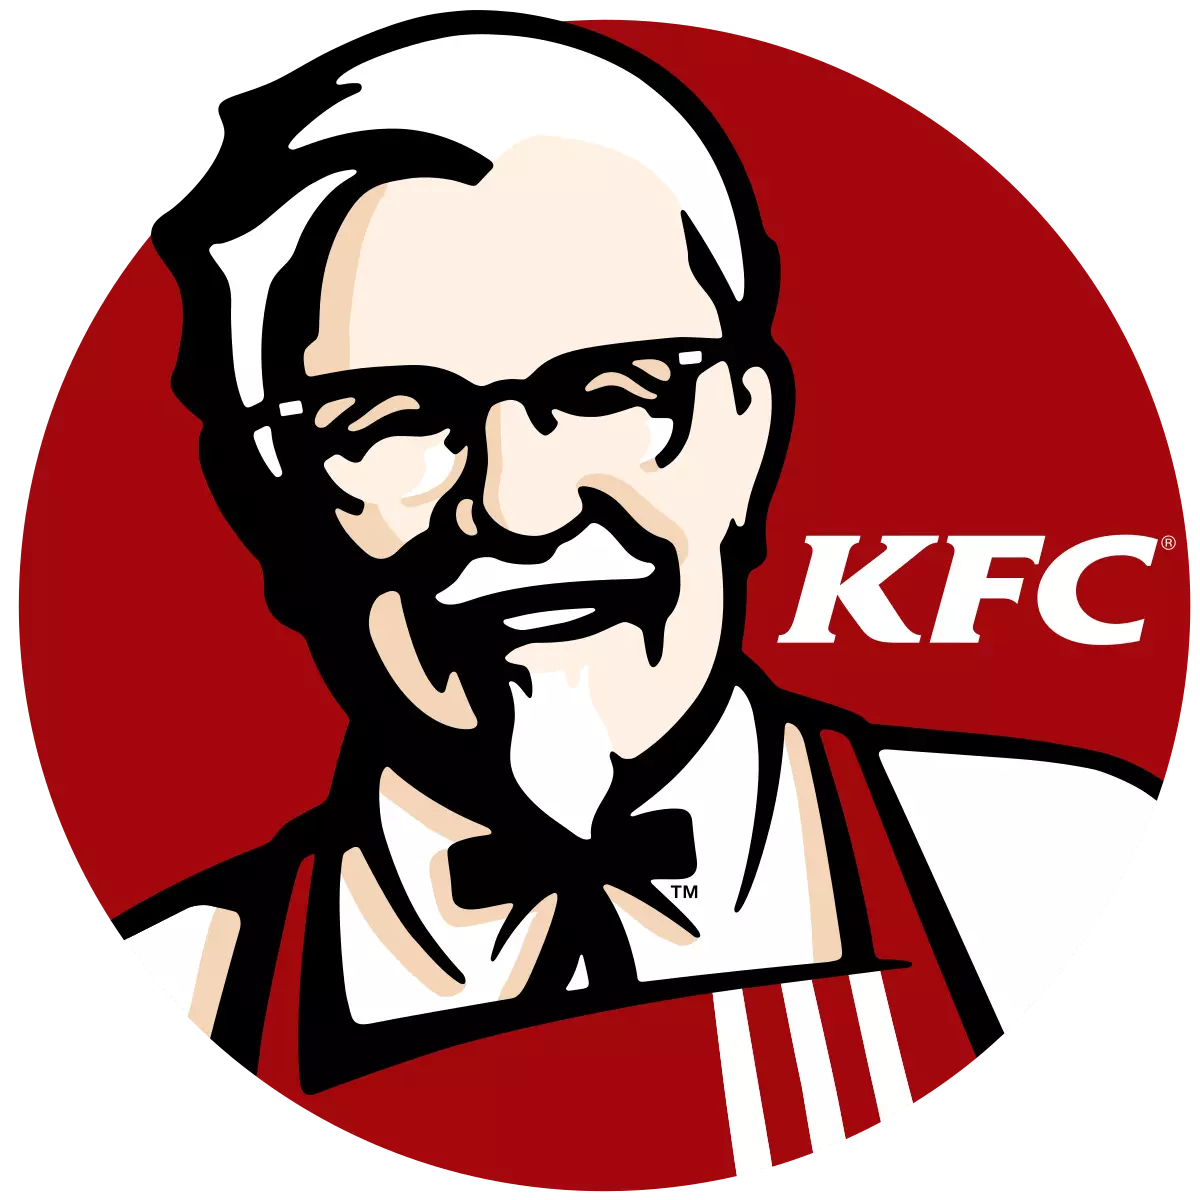 KFC thuộc Yum Brand